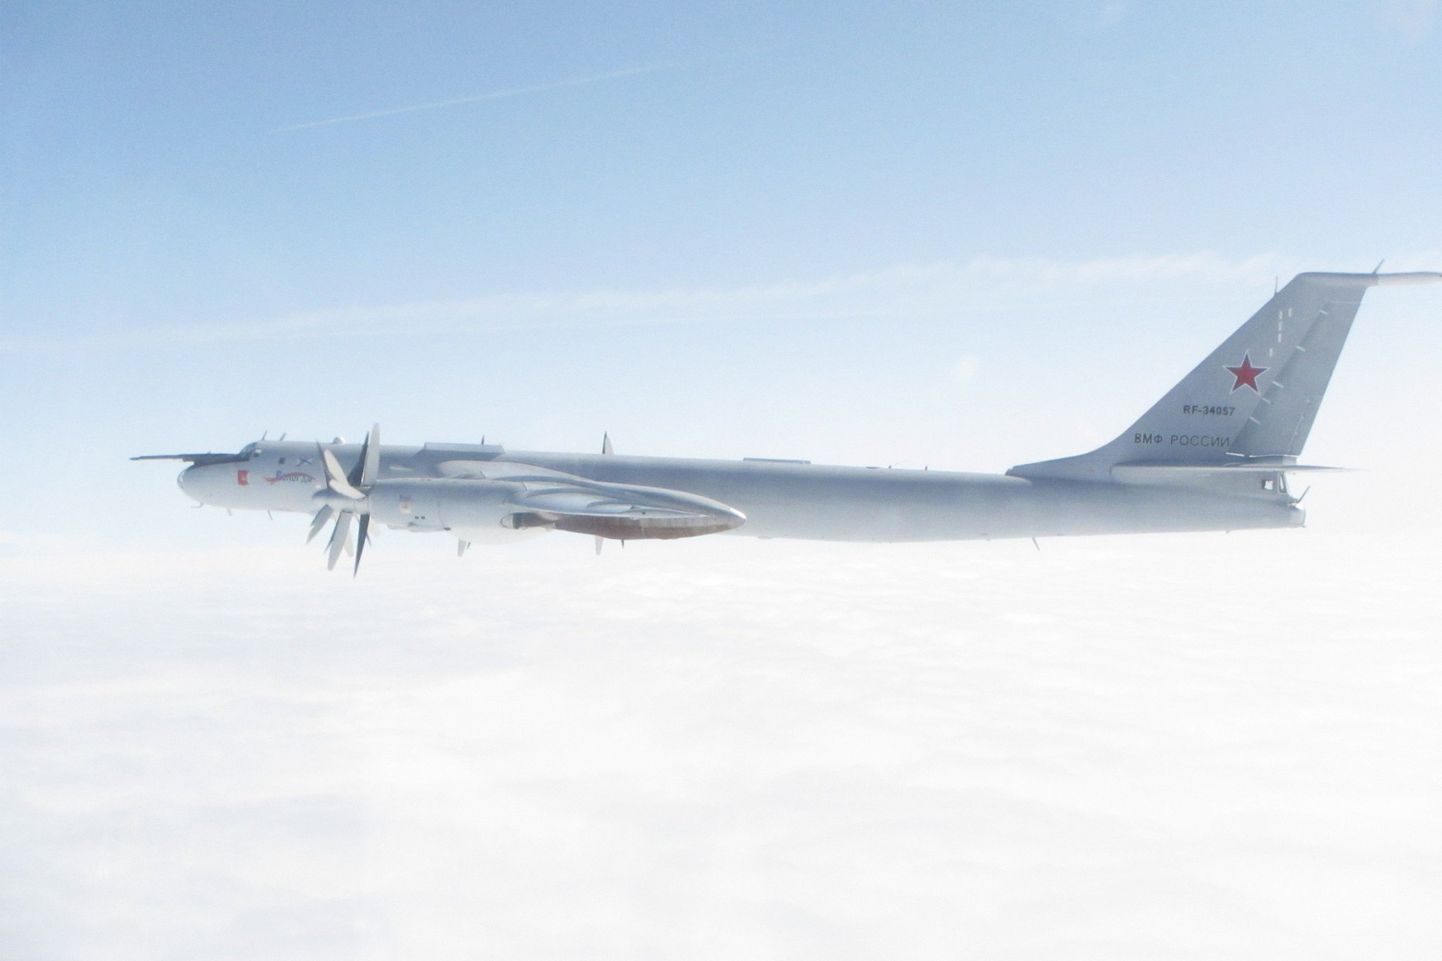 Foto Vene sõjalennukist Tu-142, mille Briti kuninglikud õhujõud avaldasid koos saatmisest teatanud Twitteri-postitusega.